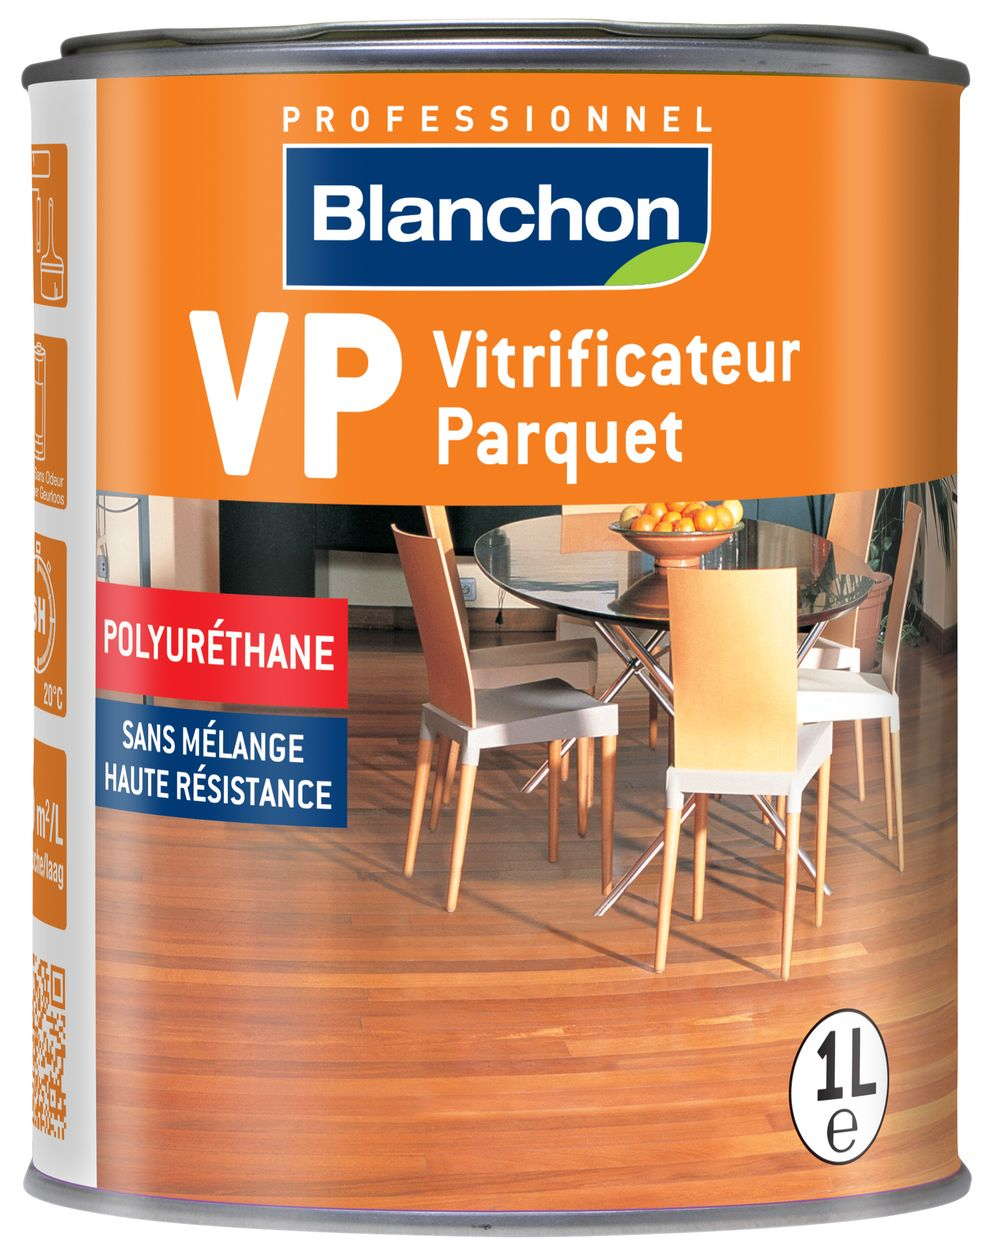 vitrificateur-parquet-vp-1l-satine-blanchon-0